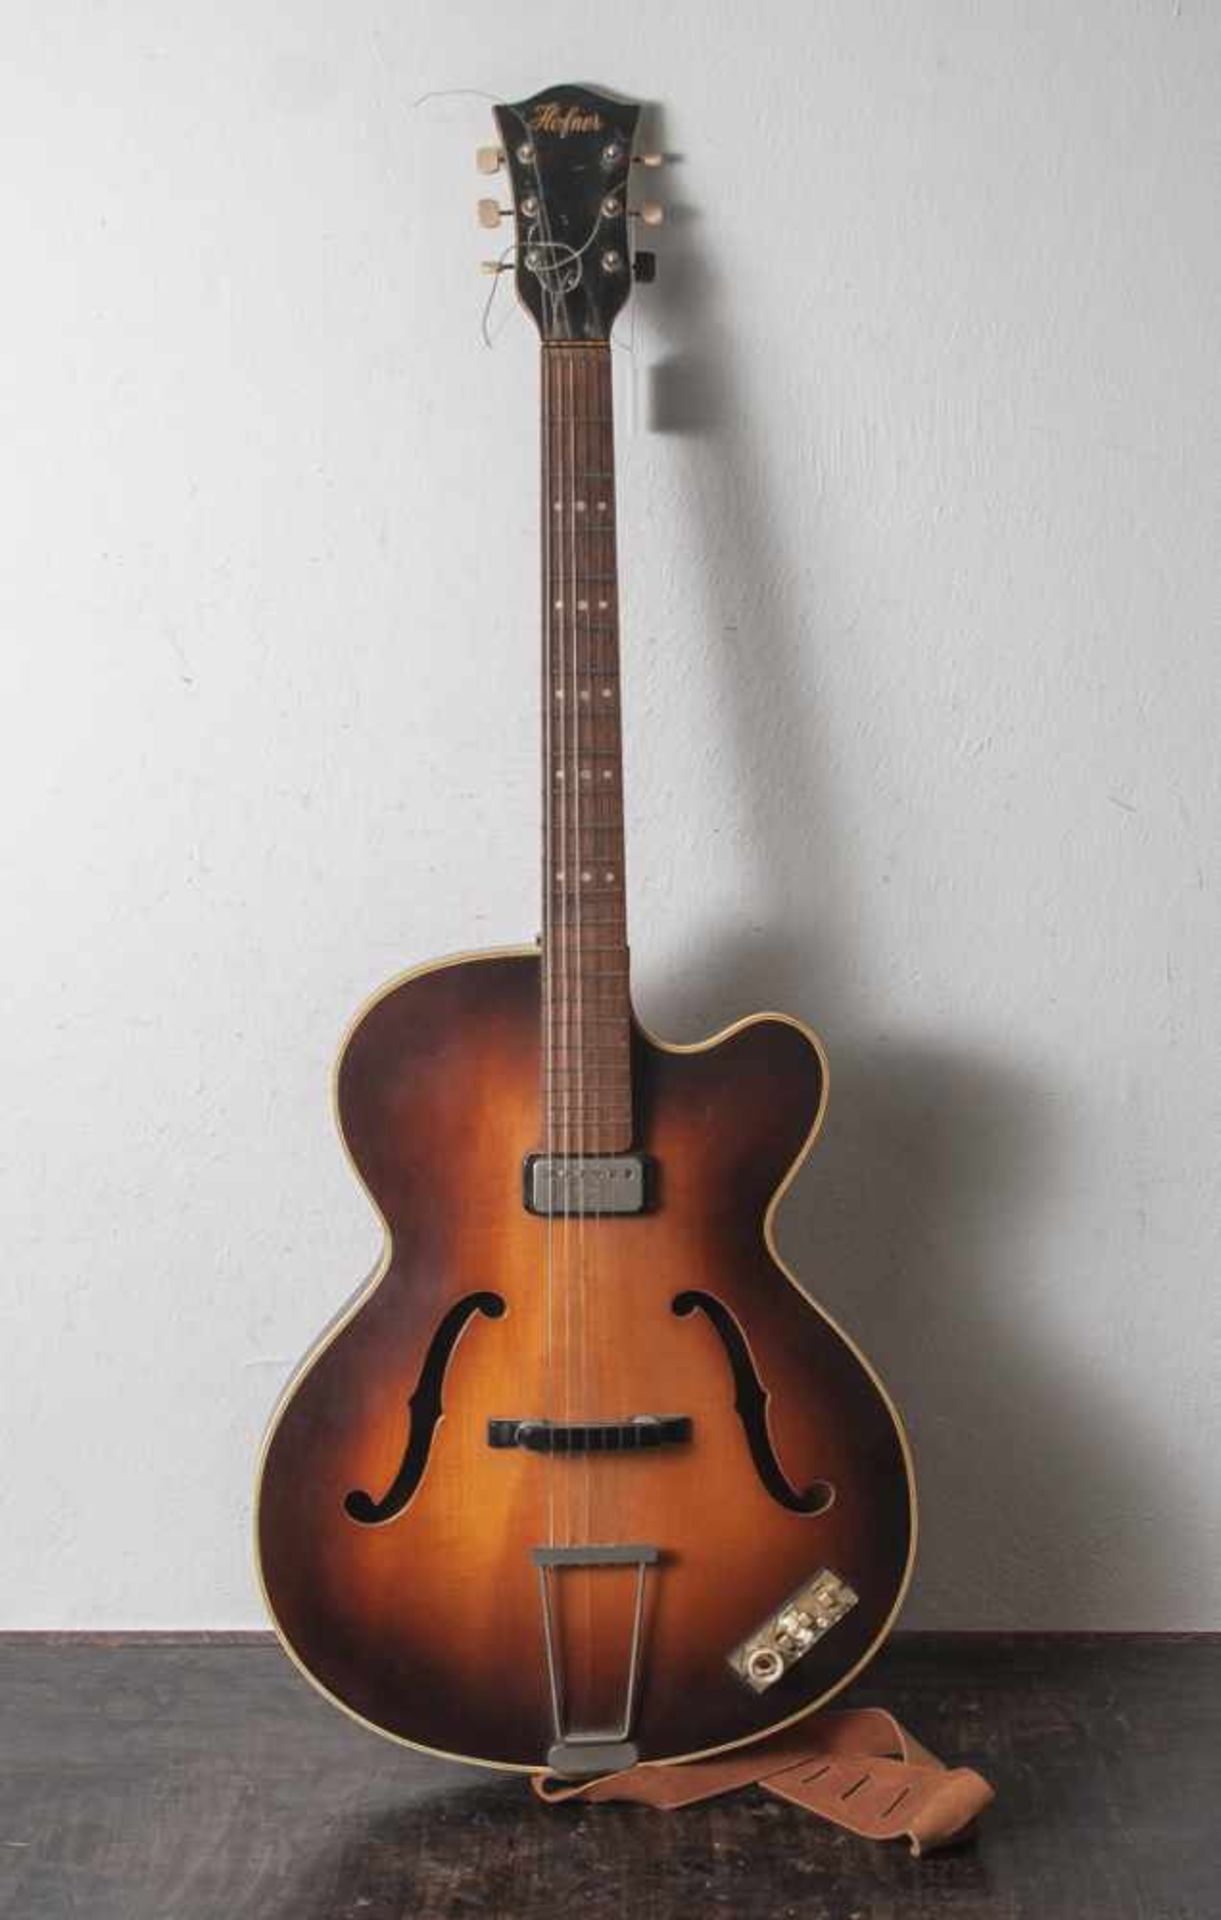 Höpfner-Gitarre, Klassiker Mod. 456, elektrisch spielbar, 1960er Jahre, guter Zustand, mitnormalen